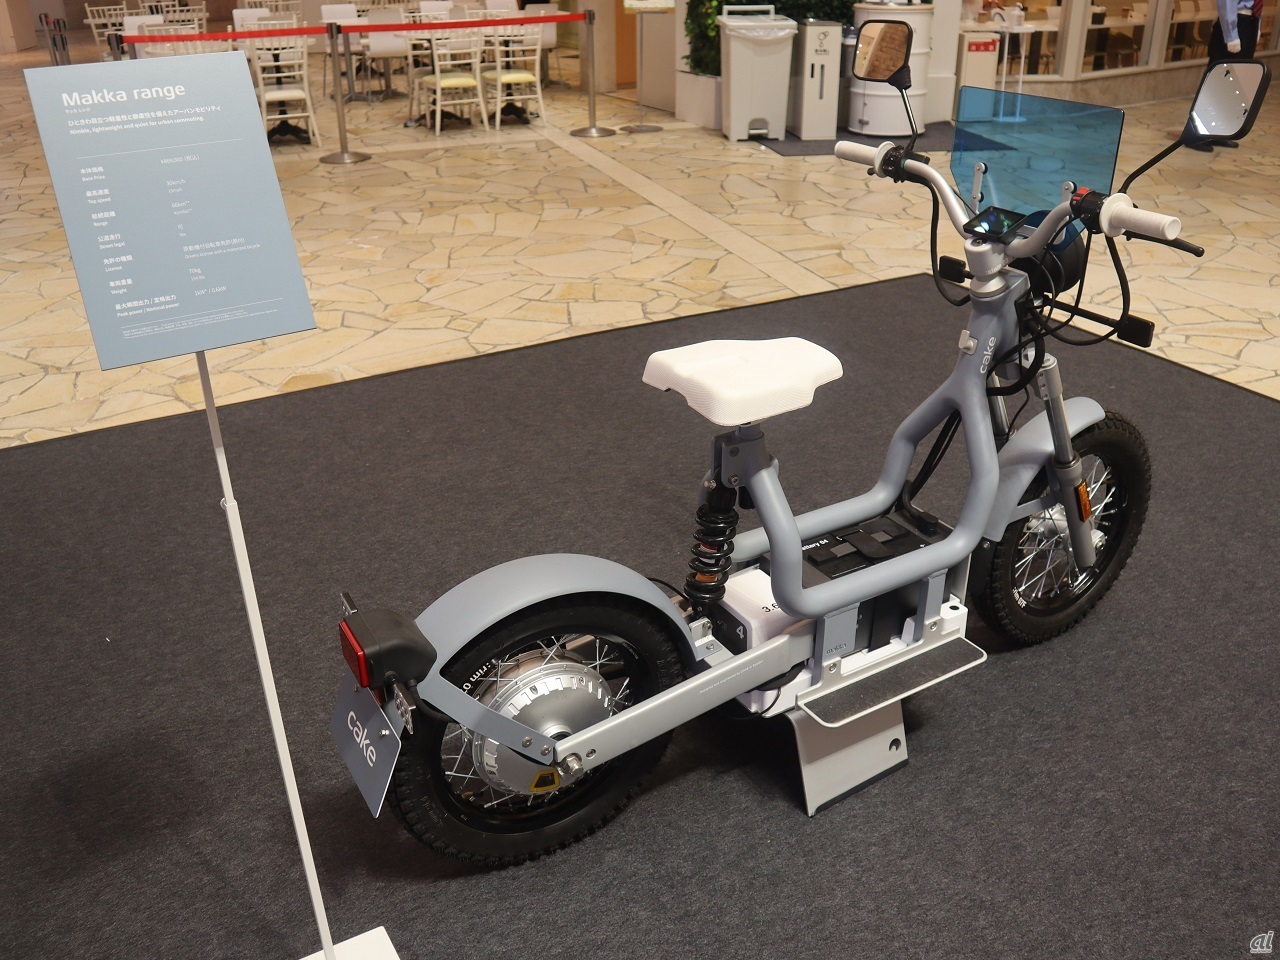 電動バイク「Makka range」（マッカ レンジ）も展示。「許可が下りれば走らせたかった」北川氏